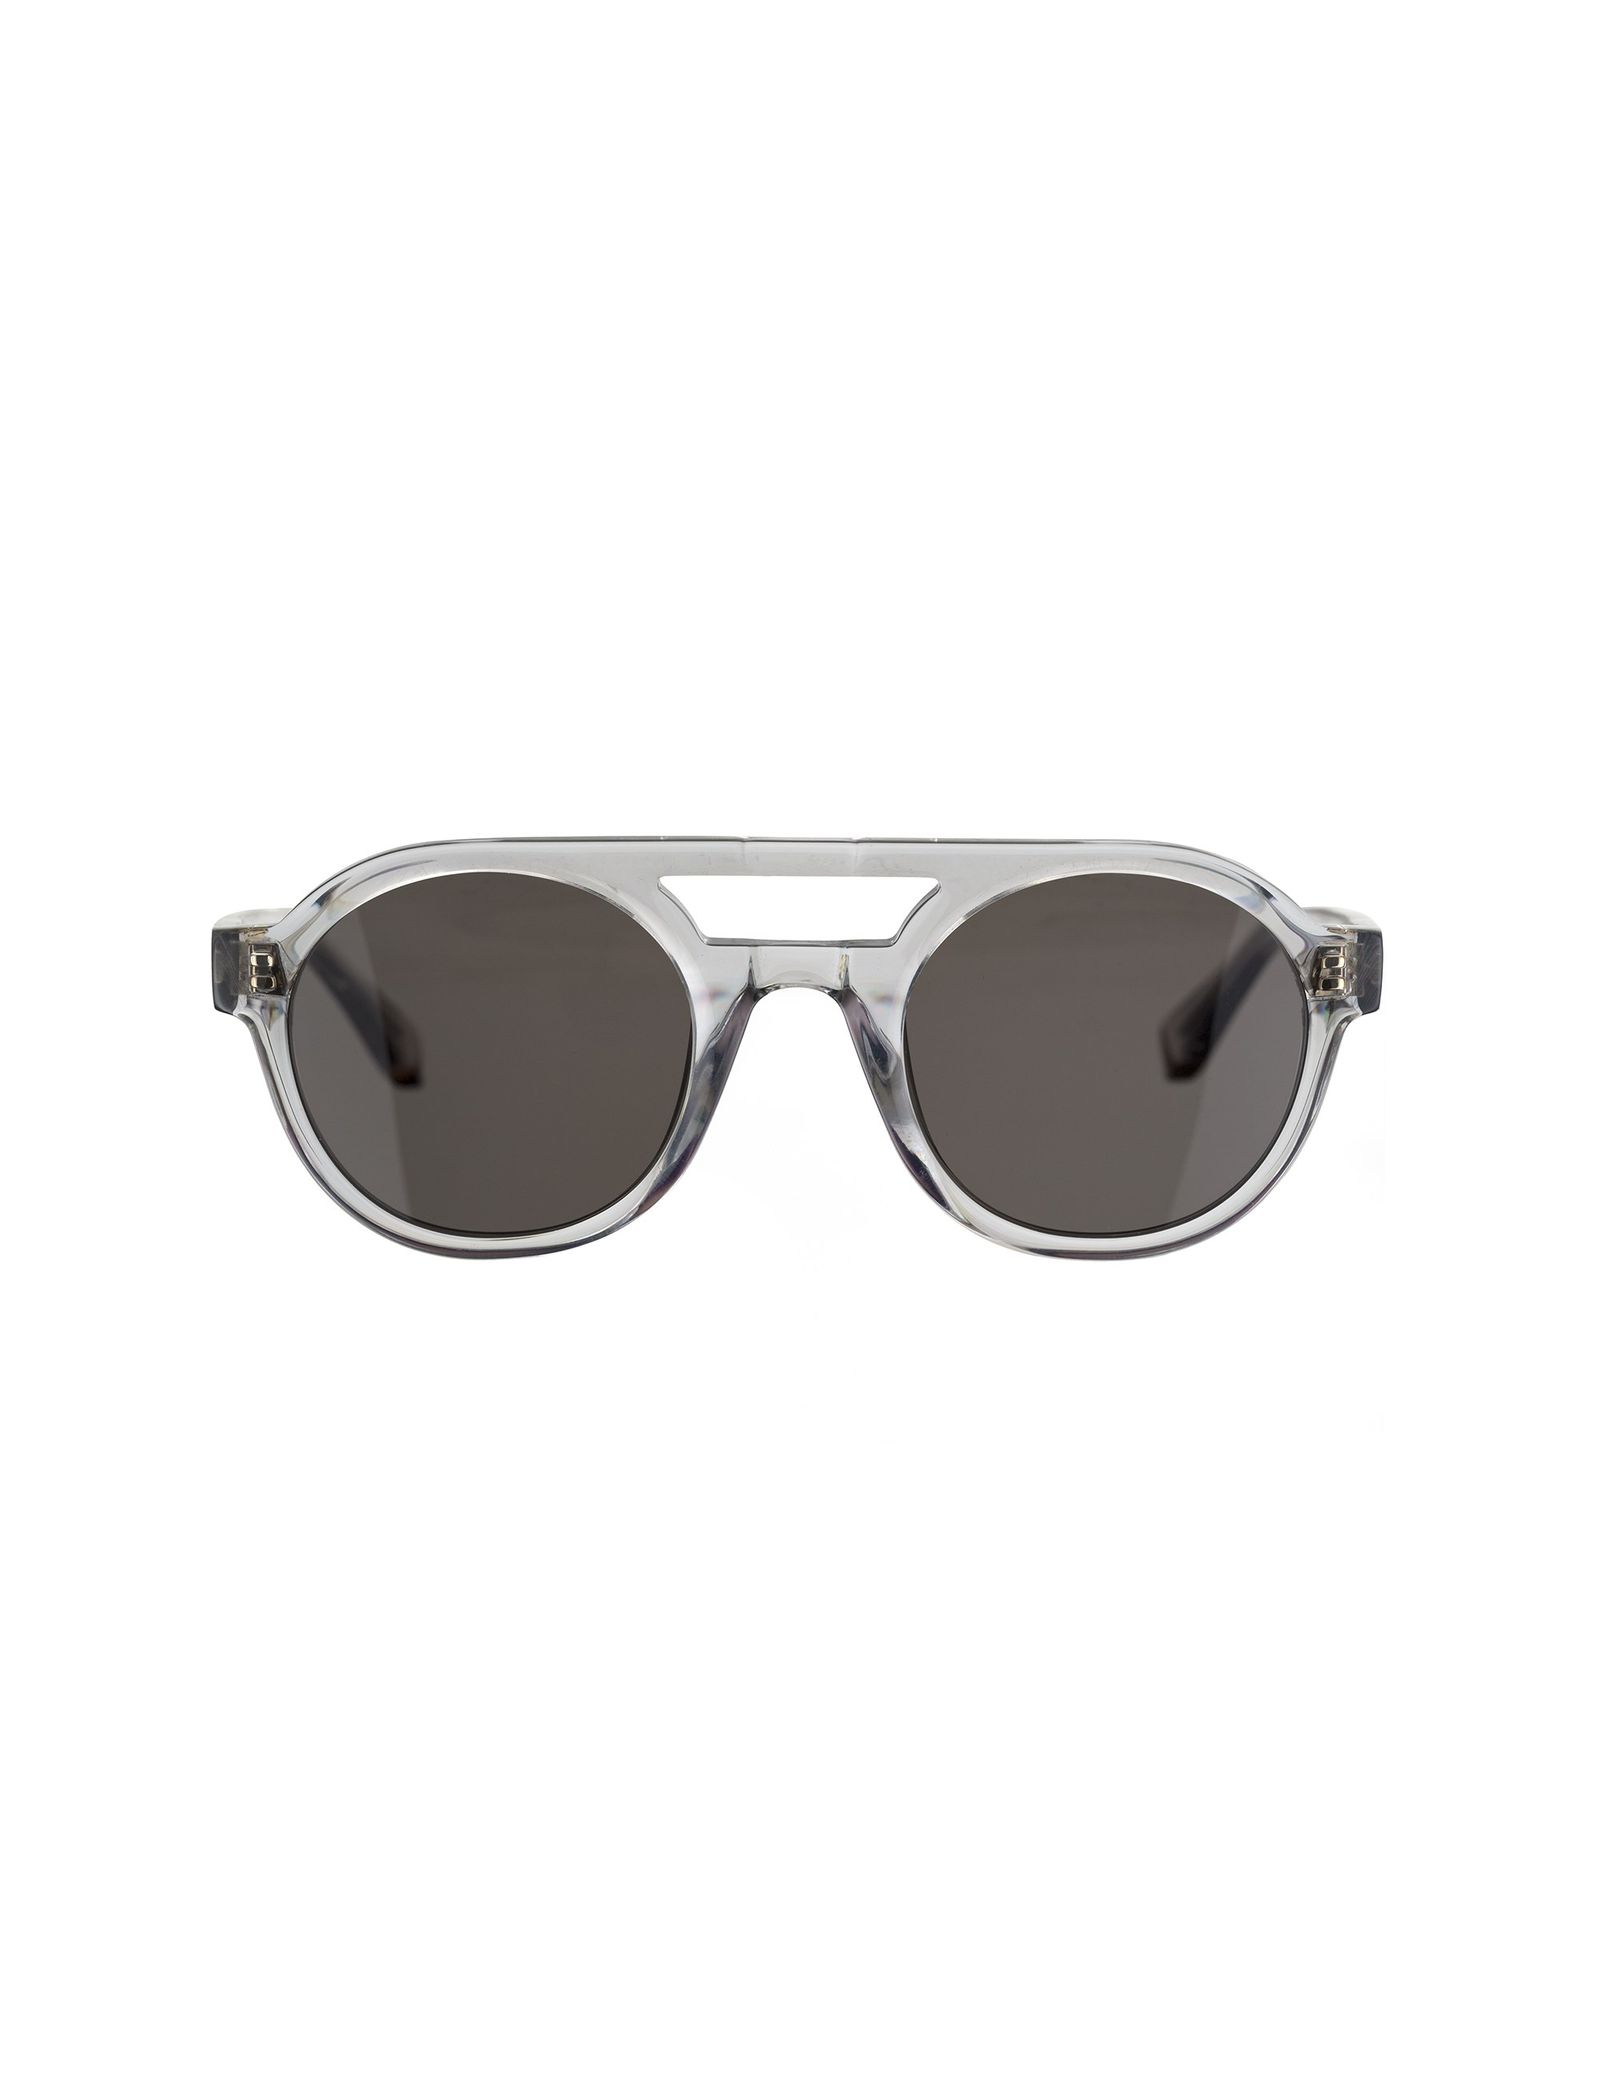 عینک آفتابی خلبانی مردانه - ساندرو - طوسي   - 2